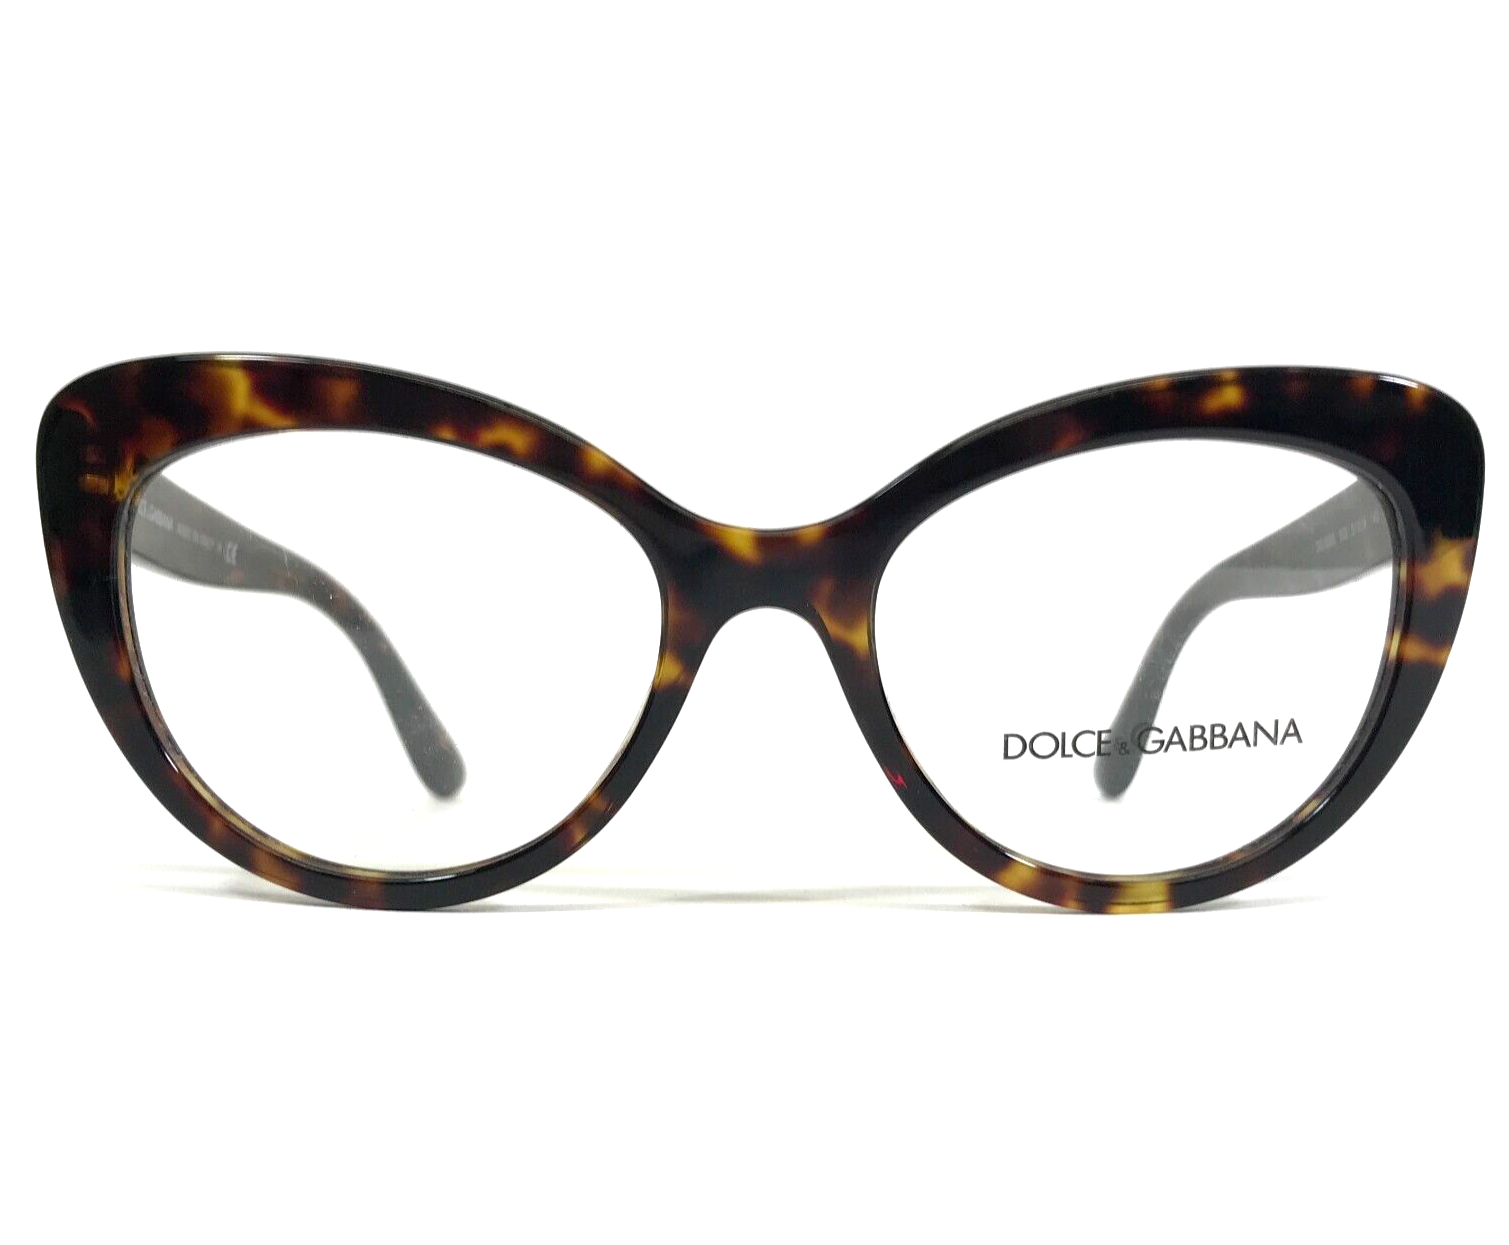 Primary image for Dolce & Gabbana Eyeglasses Frames DG3255 502 Tortoise Cat Eye Large 51-18-140